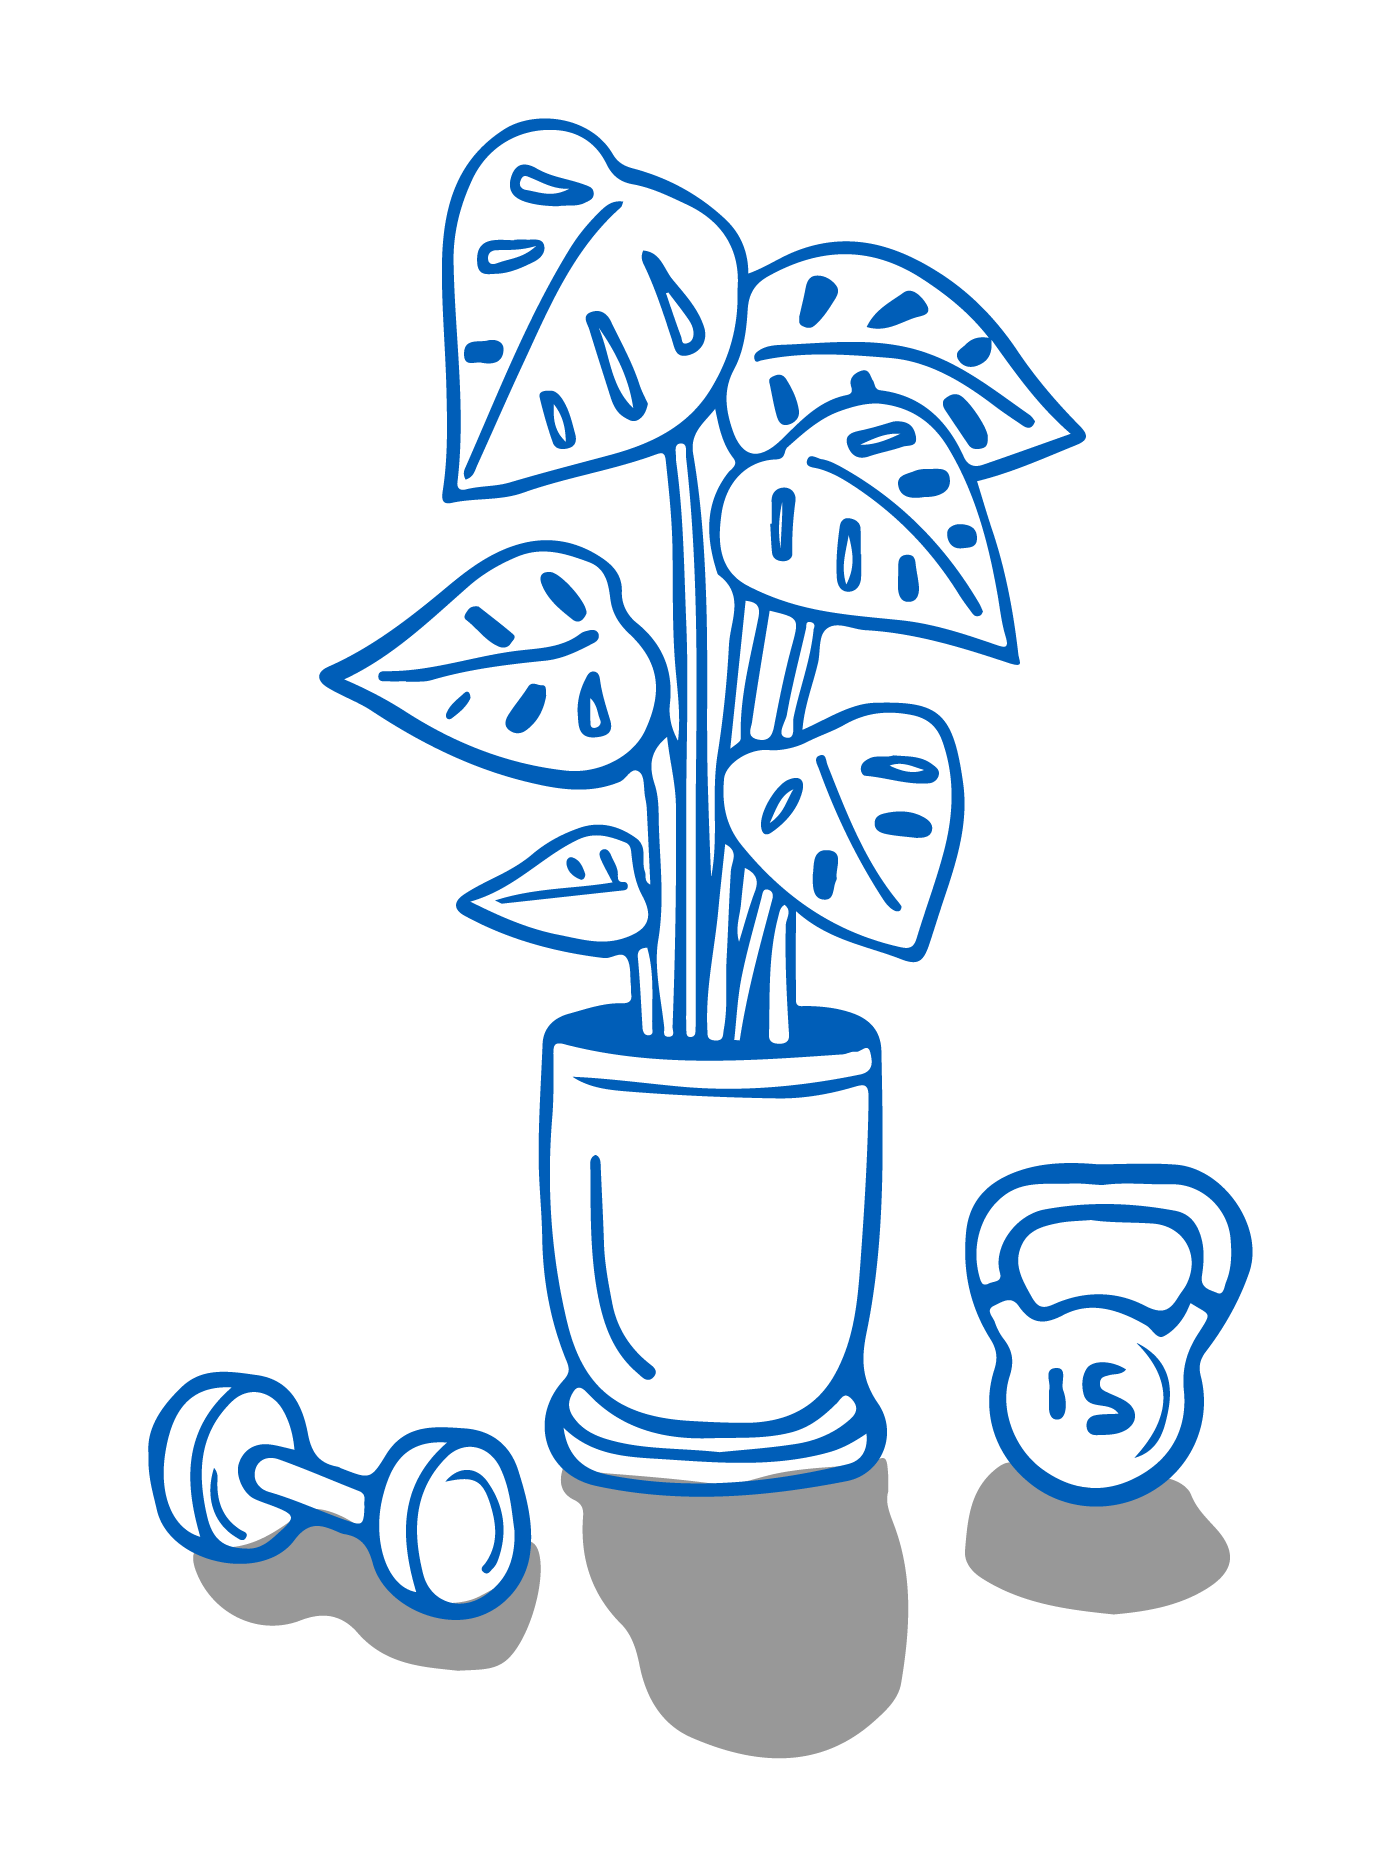 Une plante d’intérieur est posée sur le sol entre un haltère et un kettlebell.